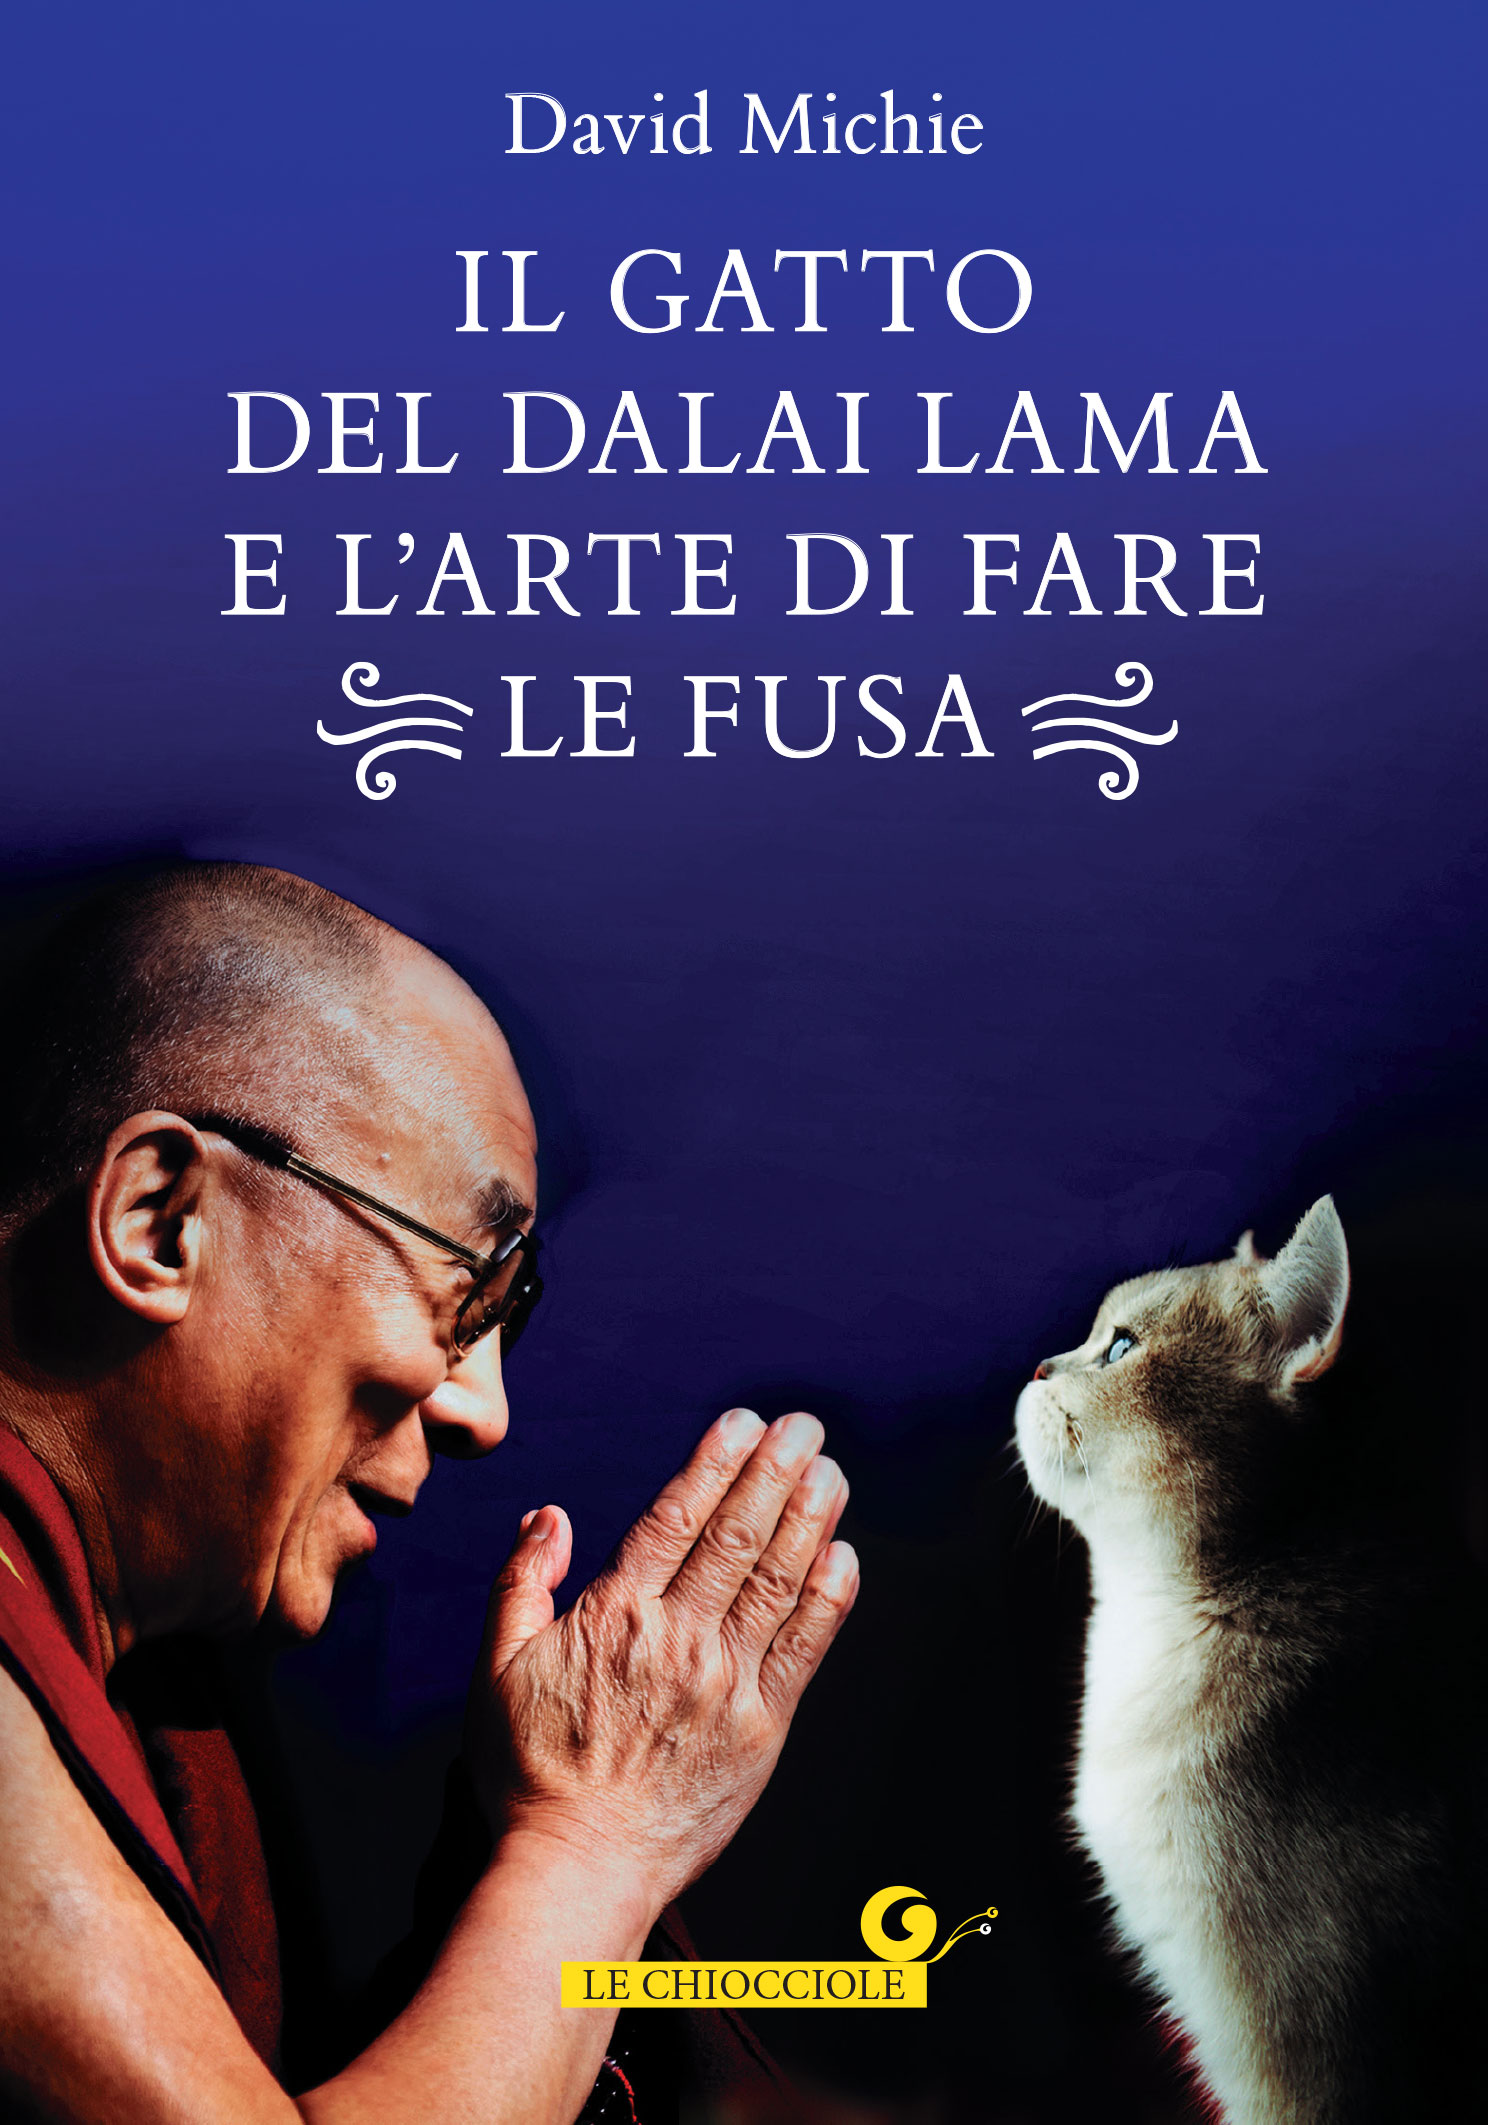 Il Gatto del Dalai Lama e l'arte di fare le fusa